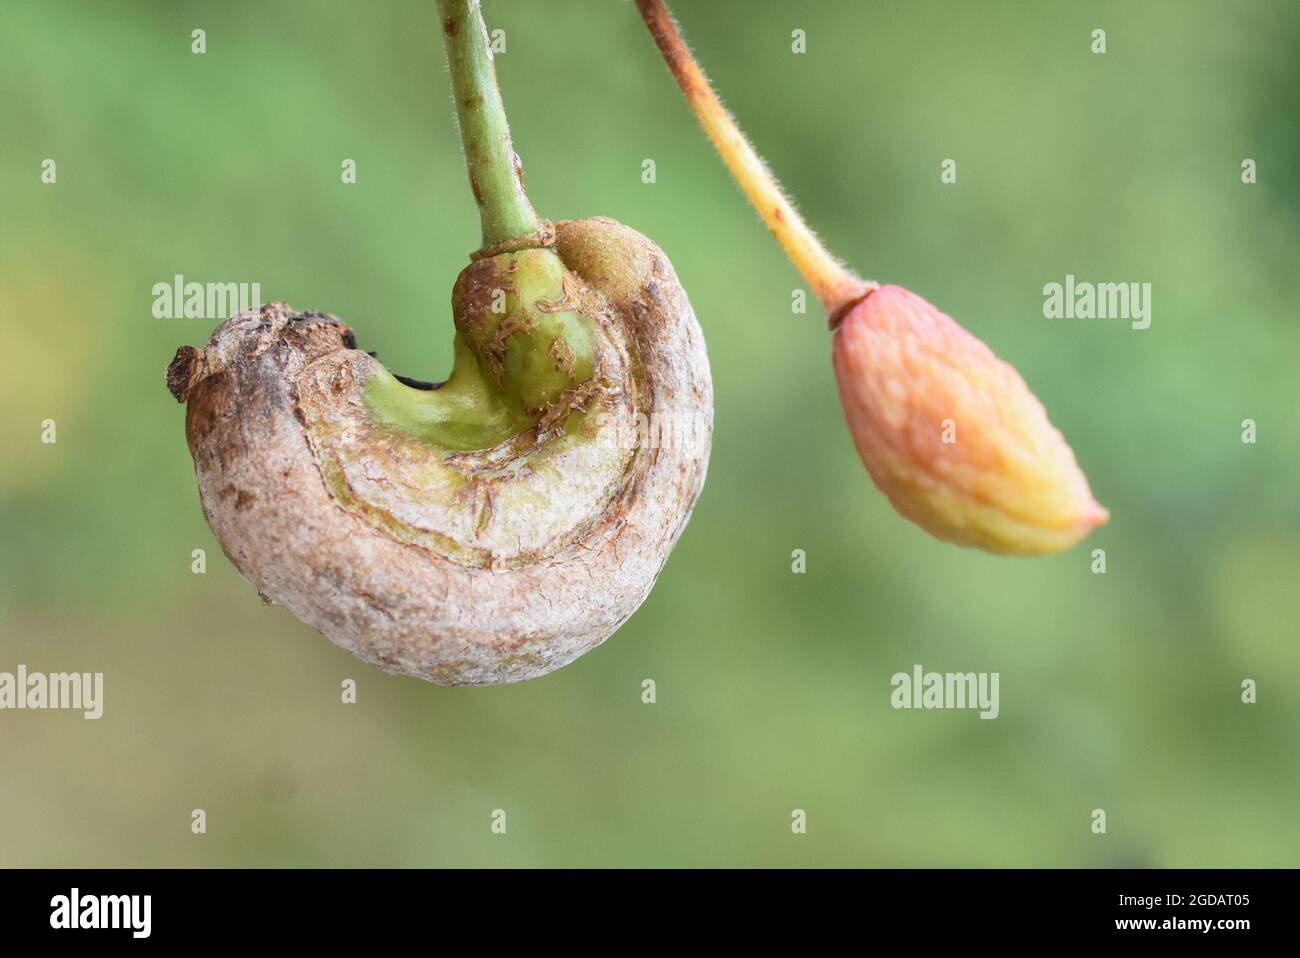 Infezione da fungo da plum gall Taphrina pruni su frutti di prugne Foto Stock